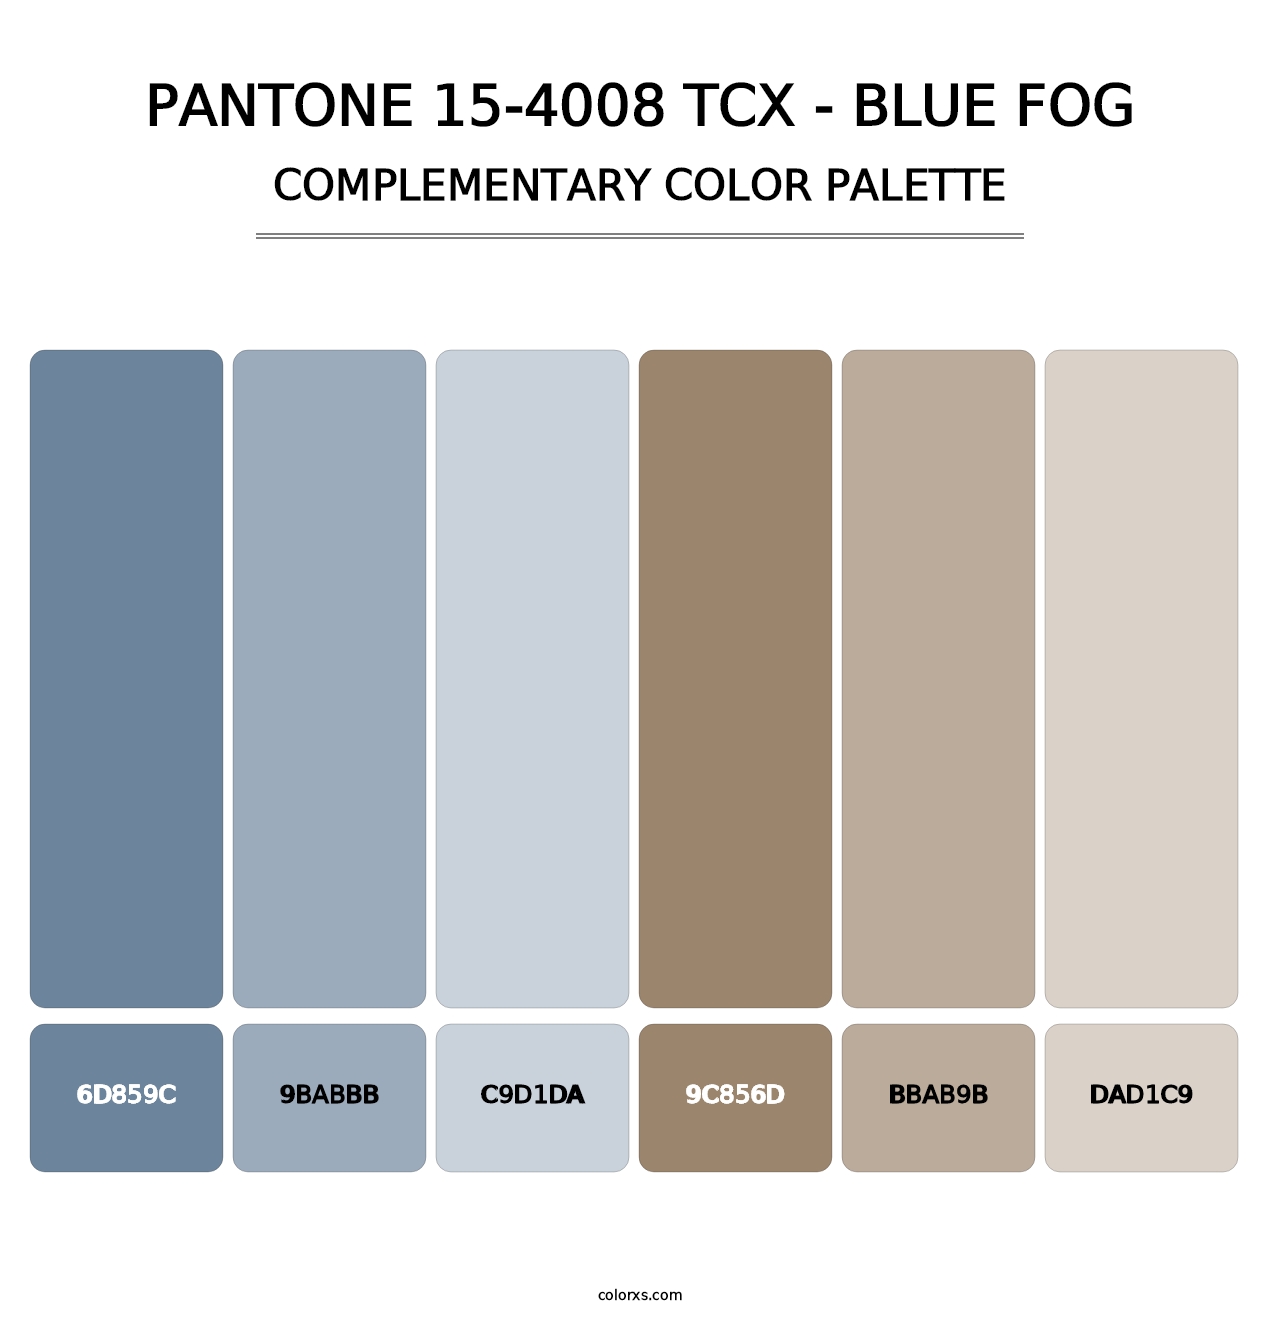 PANTONE 15-4008 TCX - Blue Fog - Complementary Color Palette